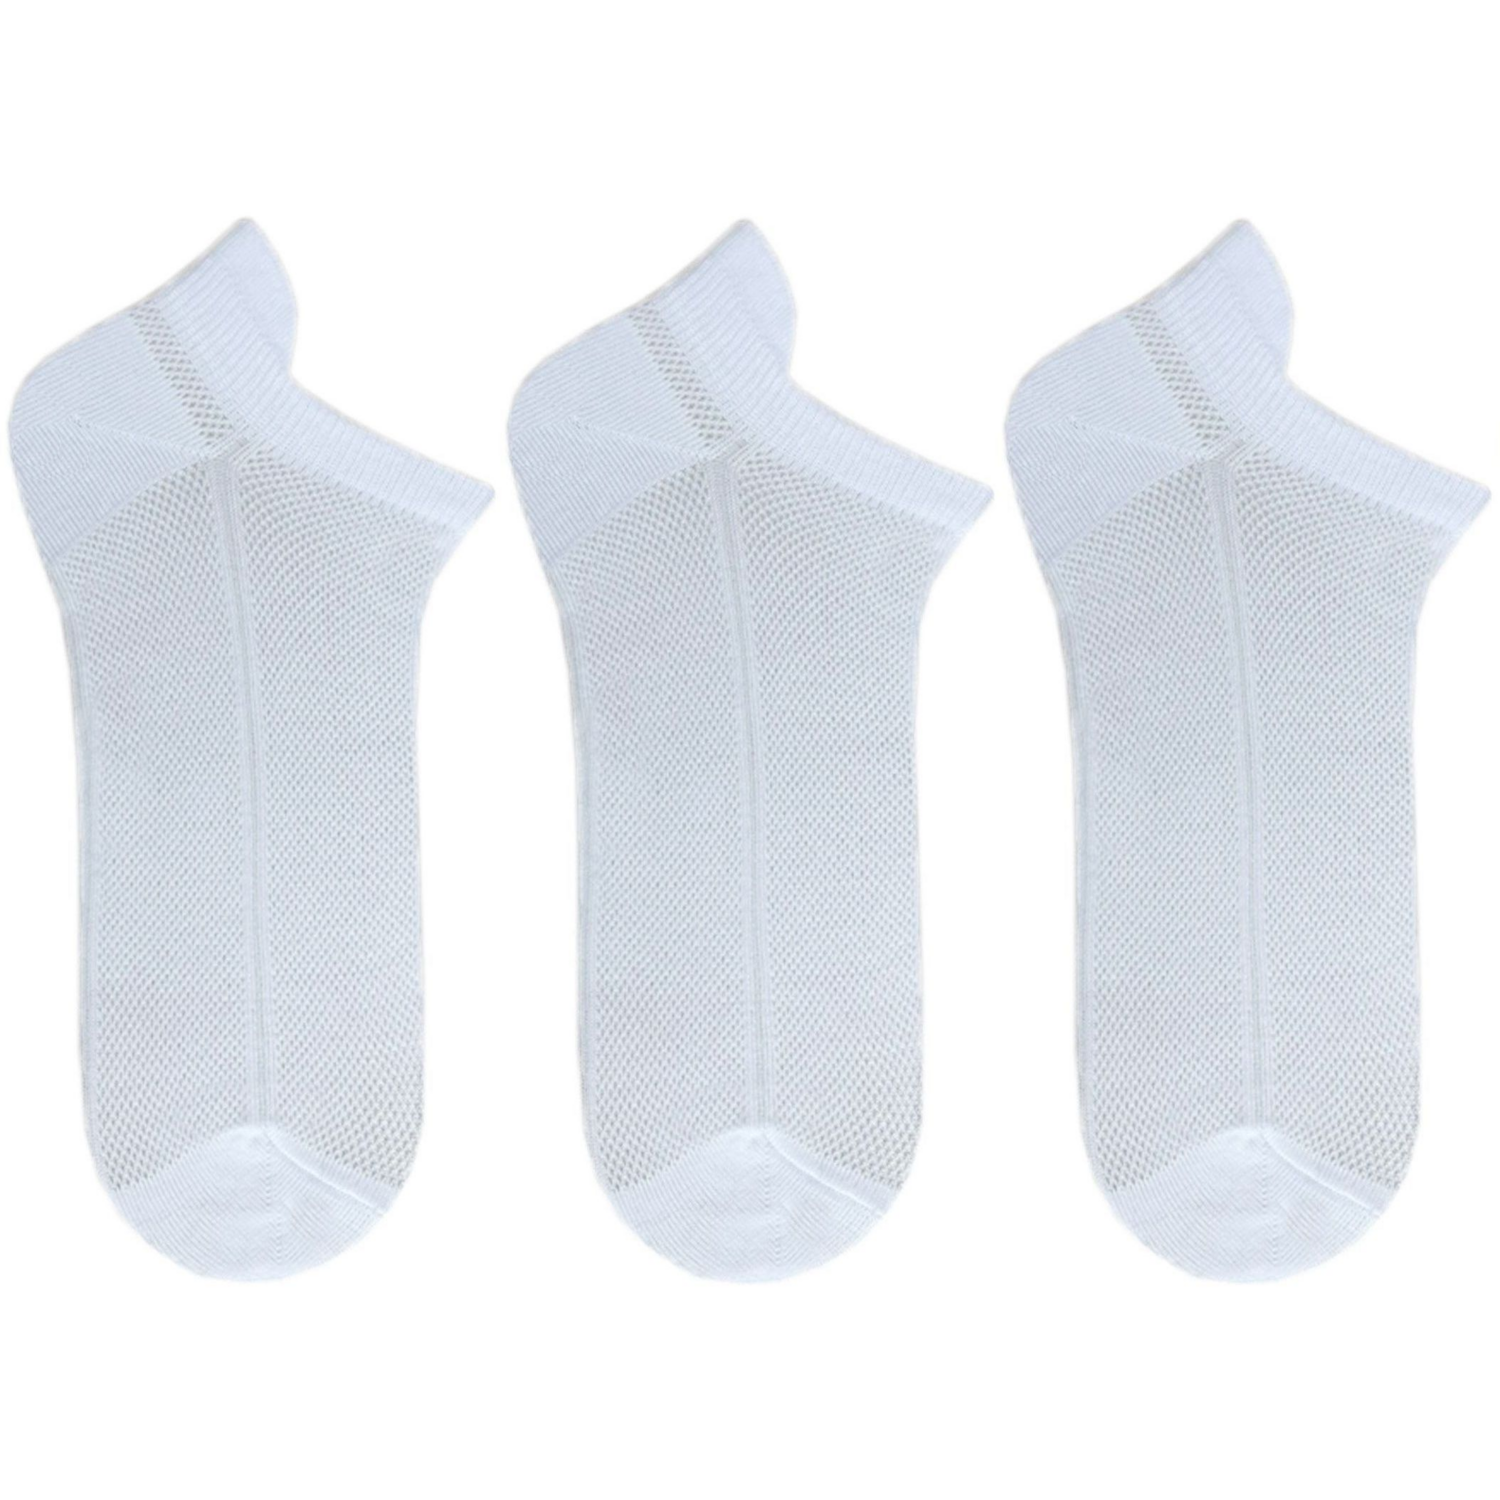 Набор носков женских Premier Socks 36-40 3 пары белые (4820163319247) фото 